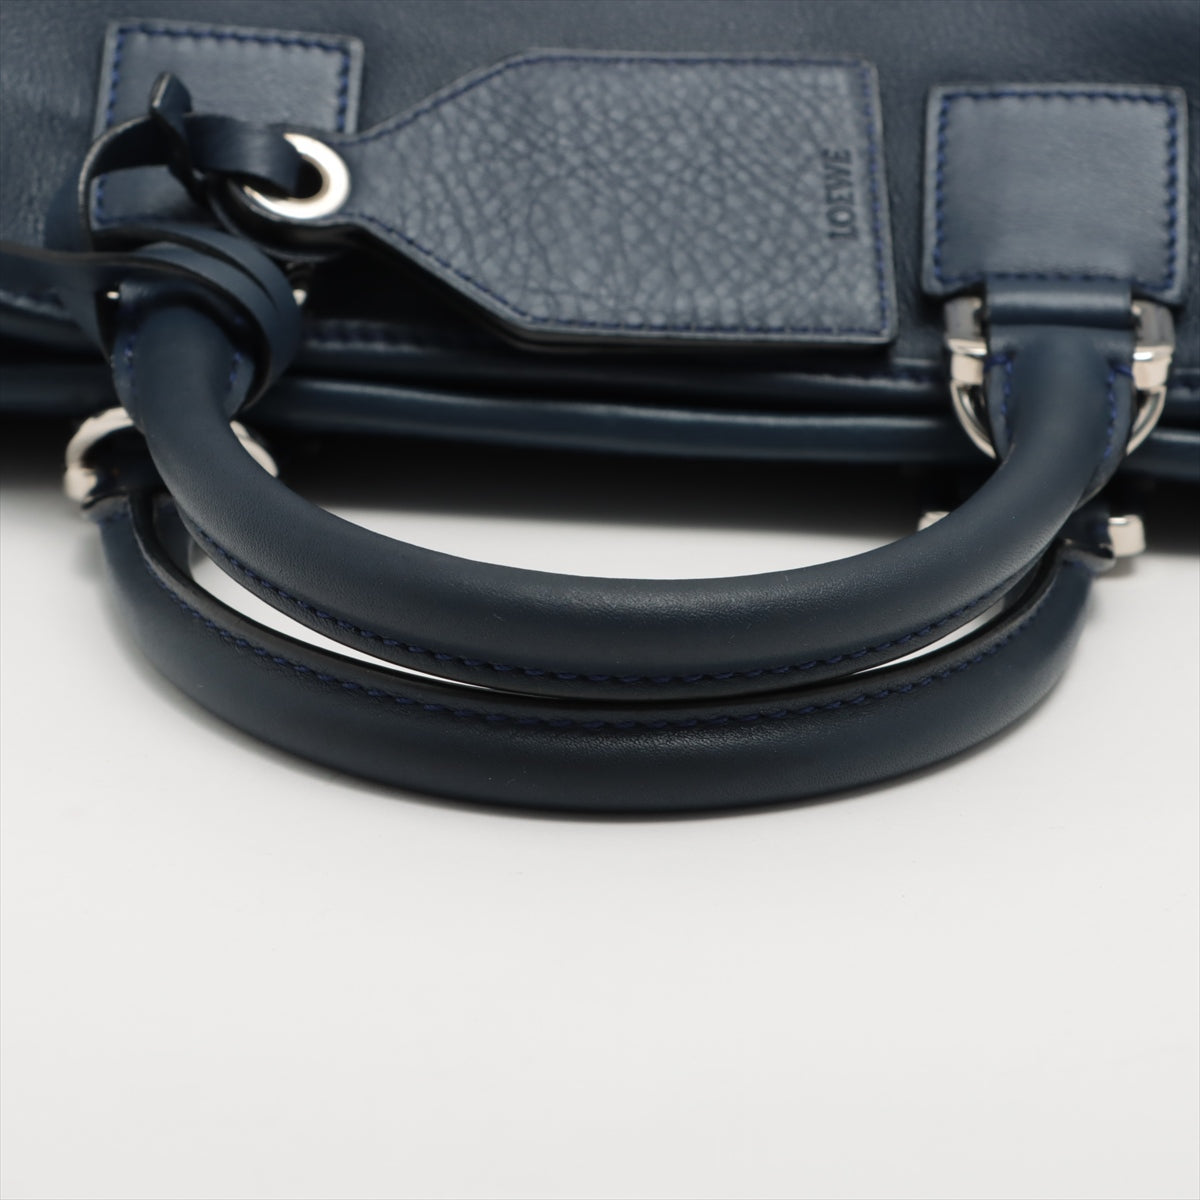 Loewe Amazona 28 Leather 2way handbag Navy blue